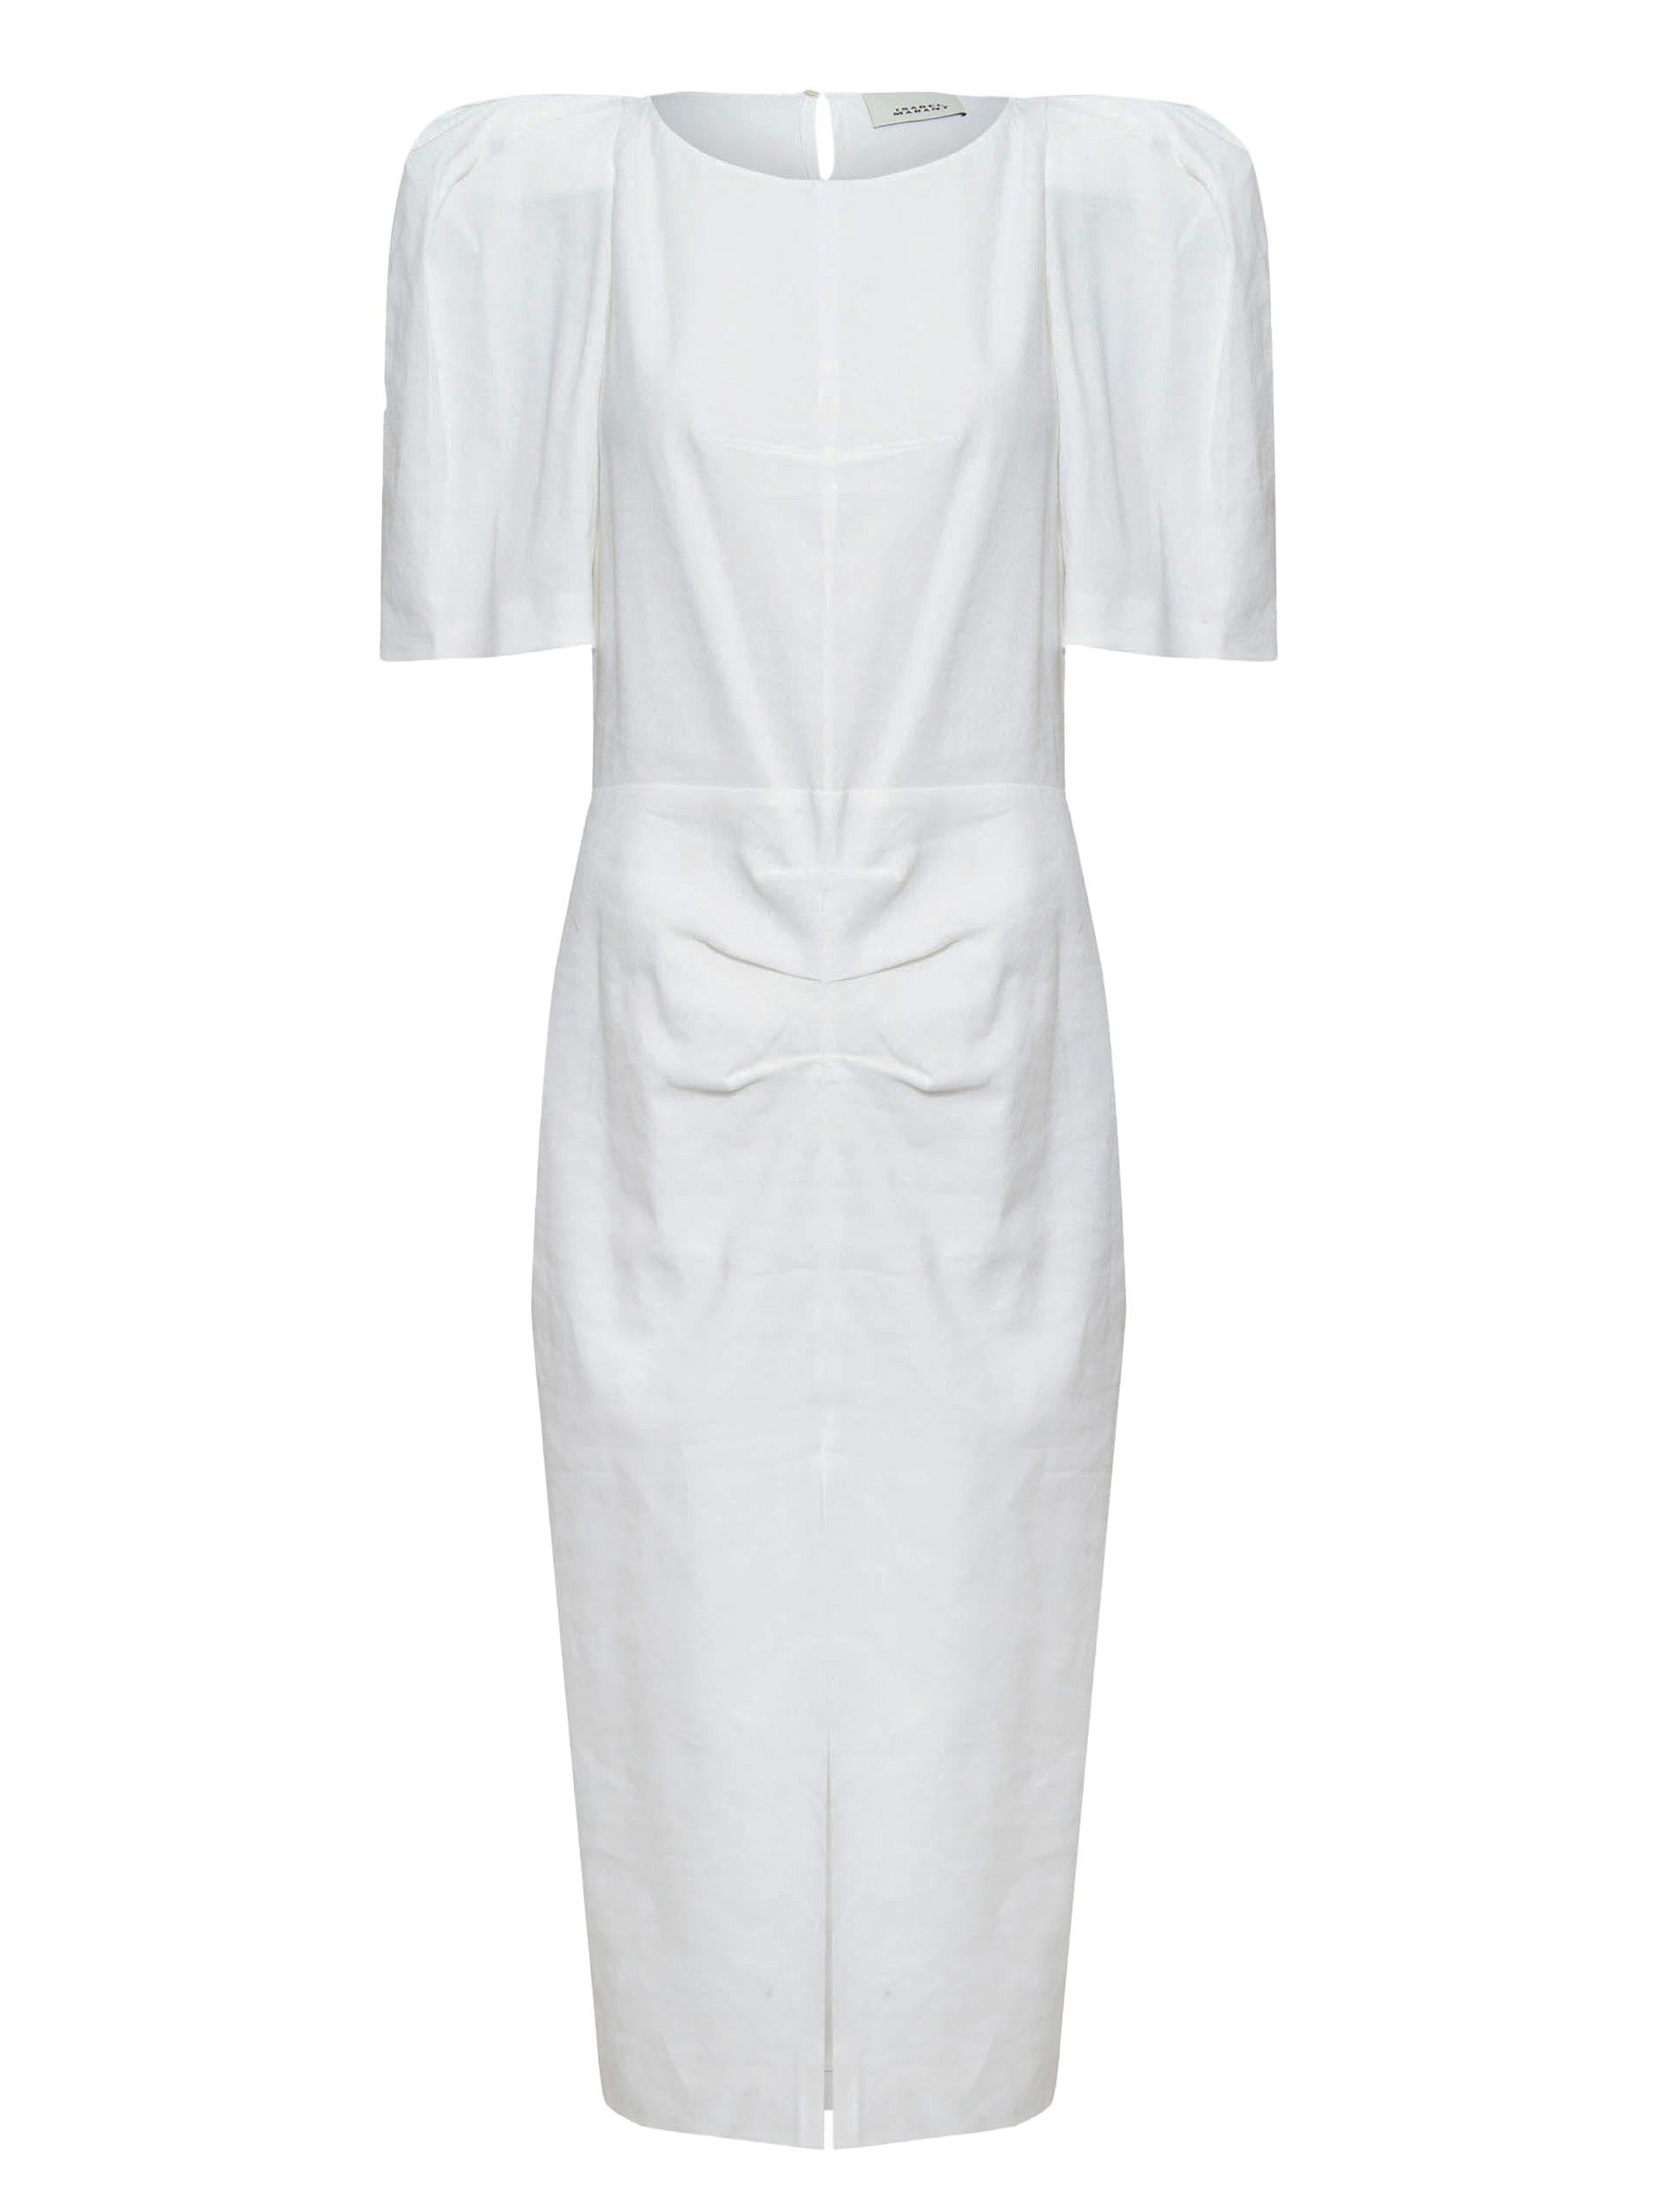 Vestido Torção Branca